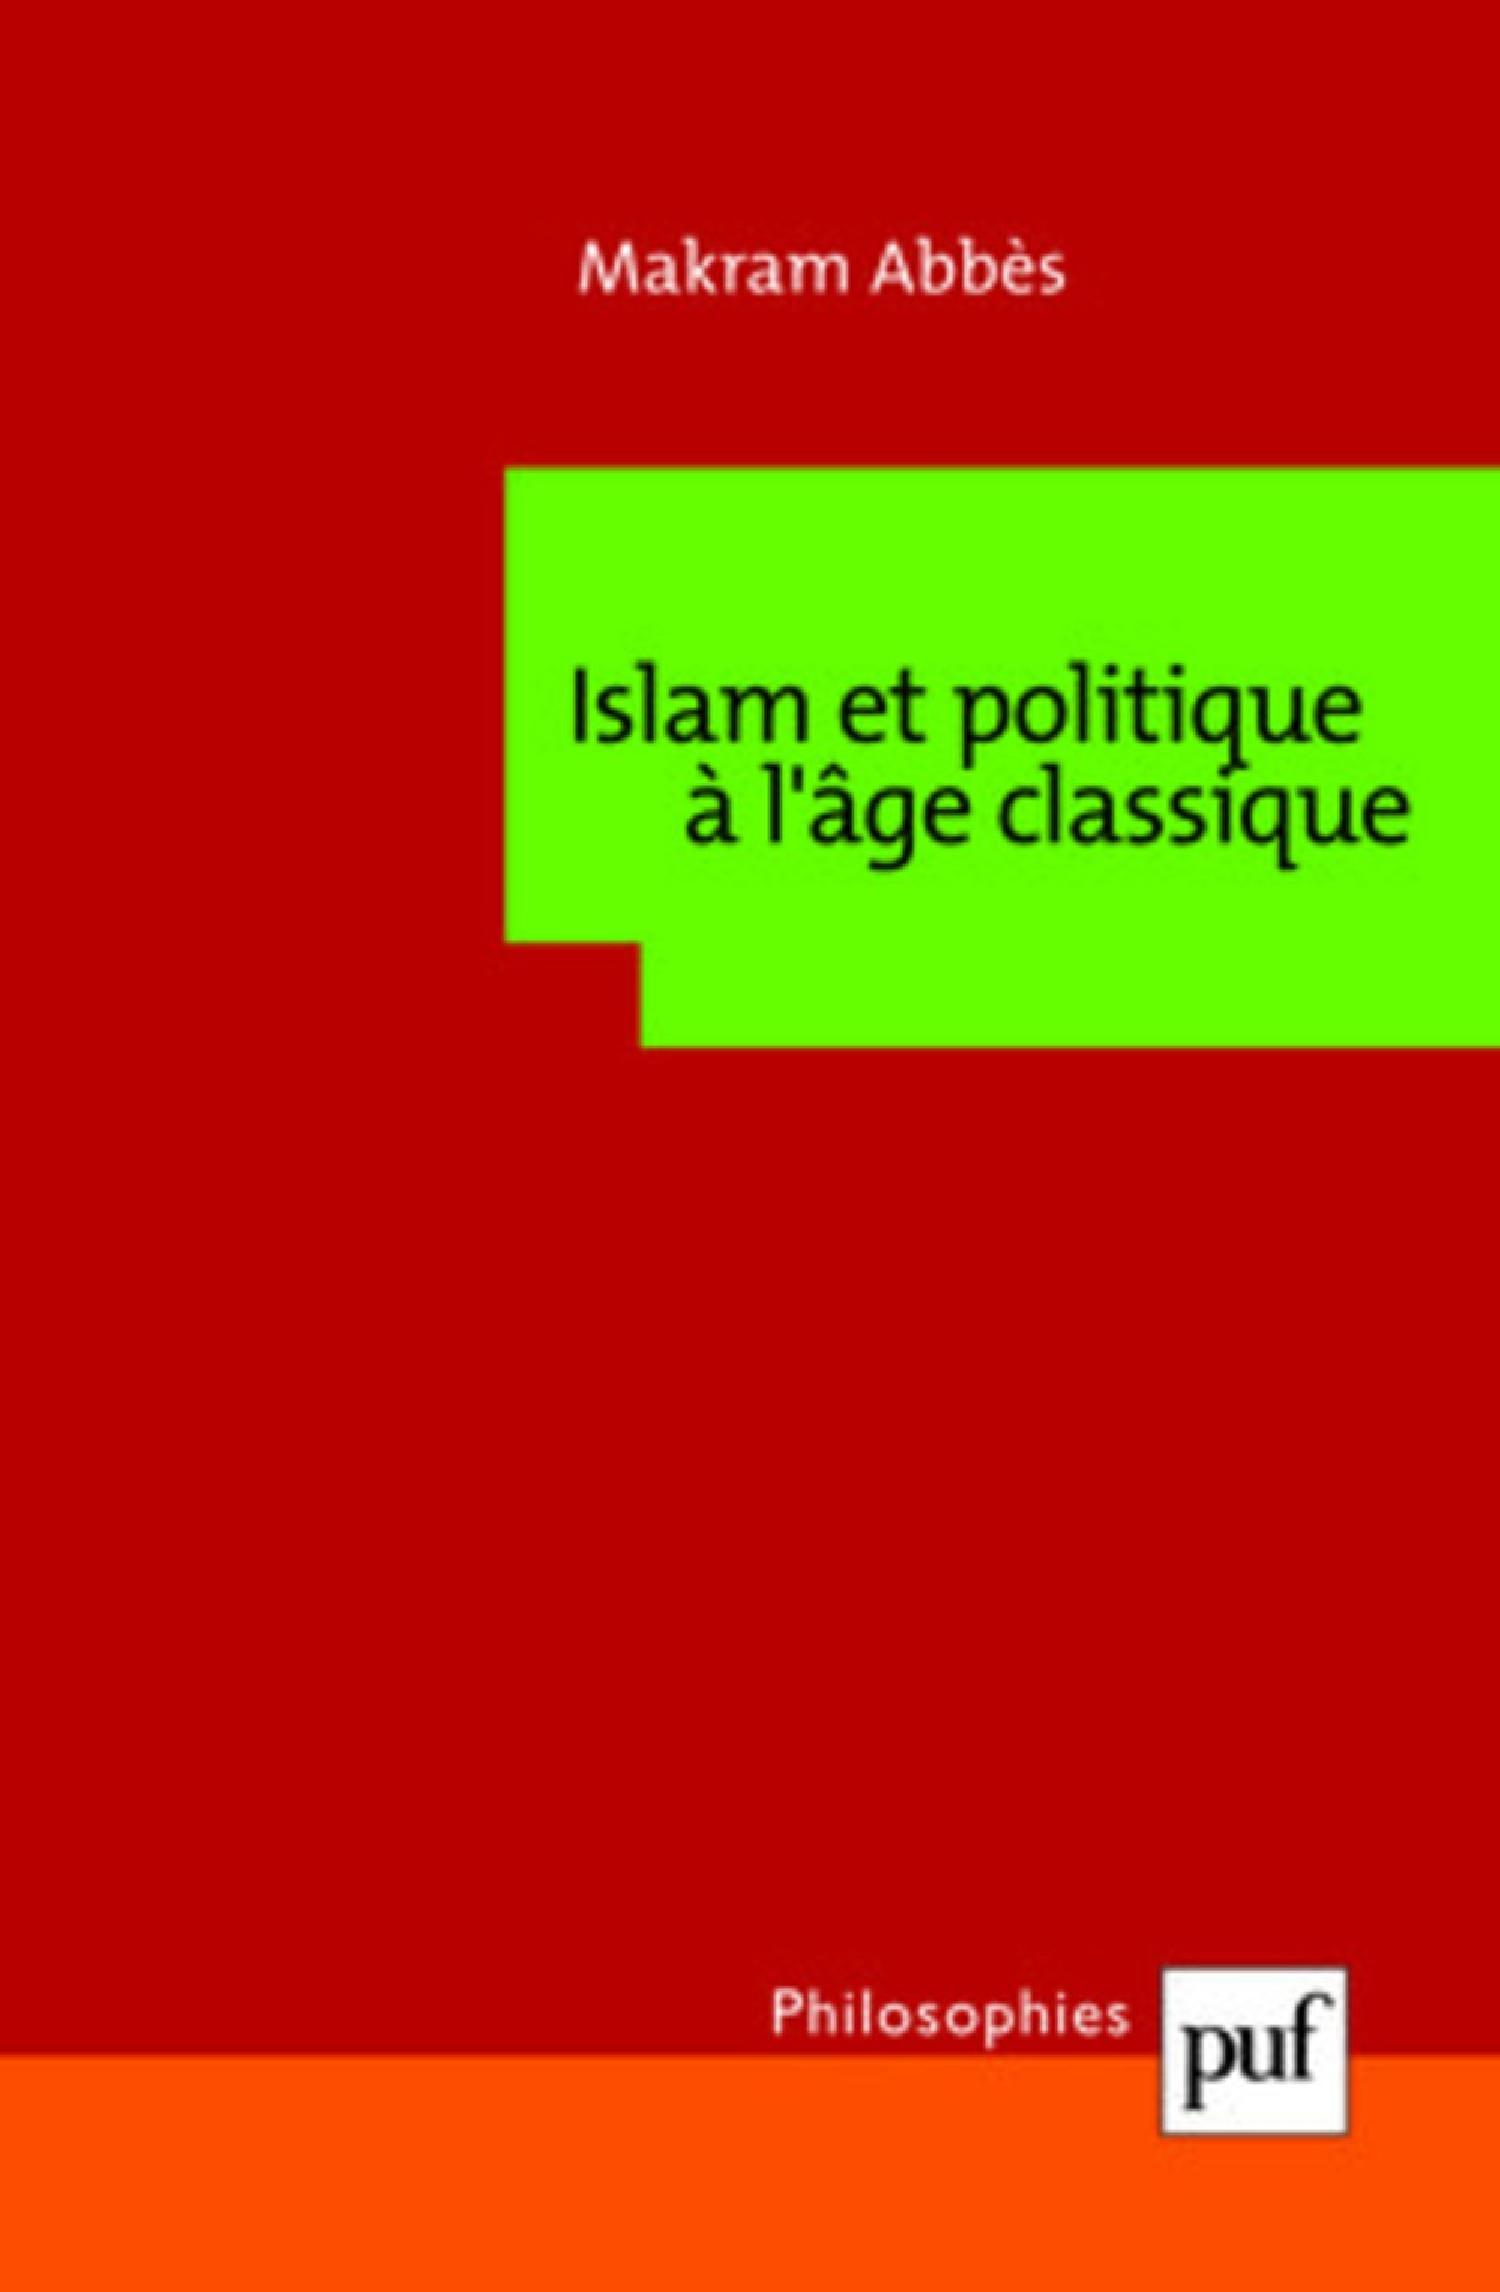 Islam et politique à l'âge classique De Makram Abbès - Presses Universitaires de France